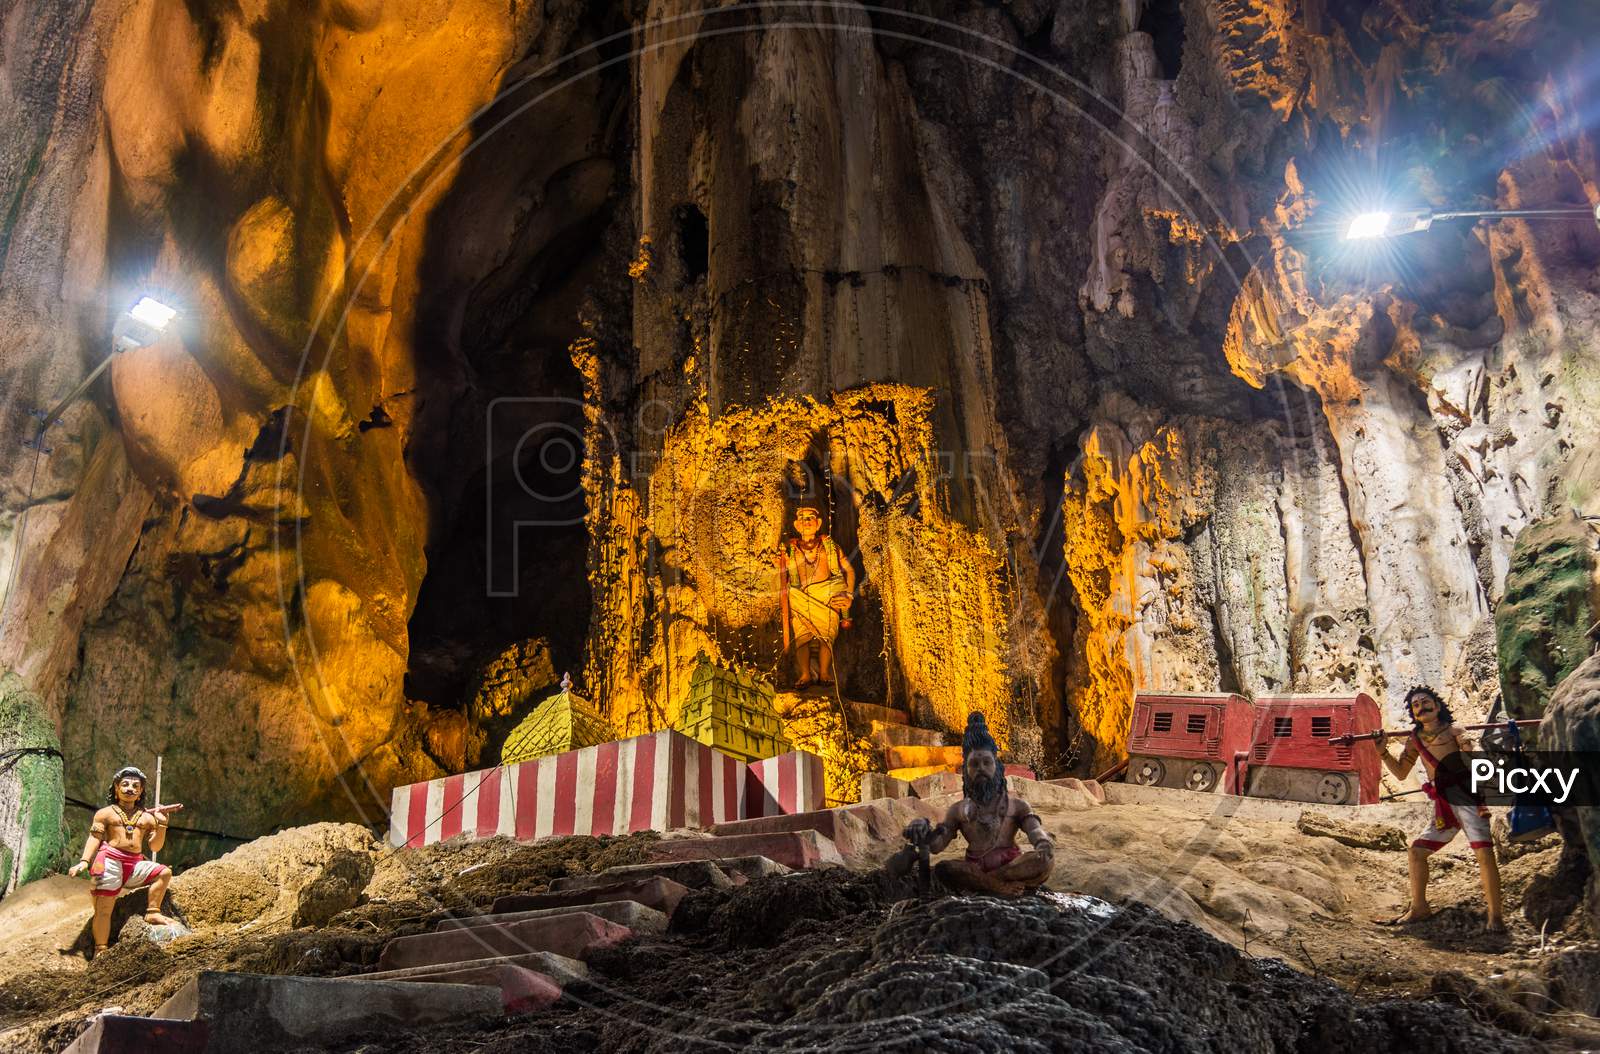 Interior Of Batu Caves In Kuala Lumpur, Malaysia